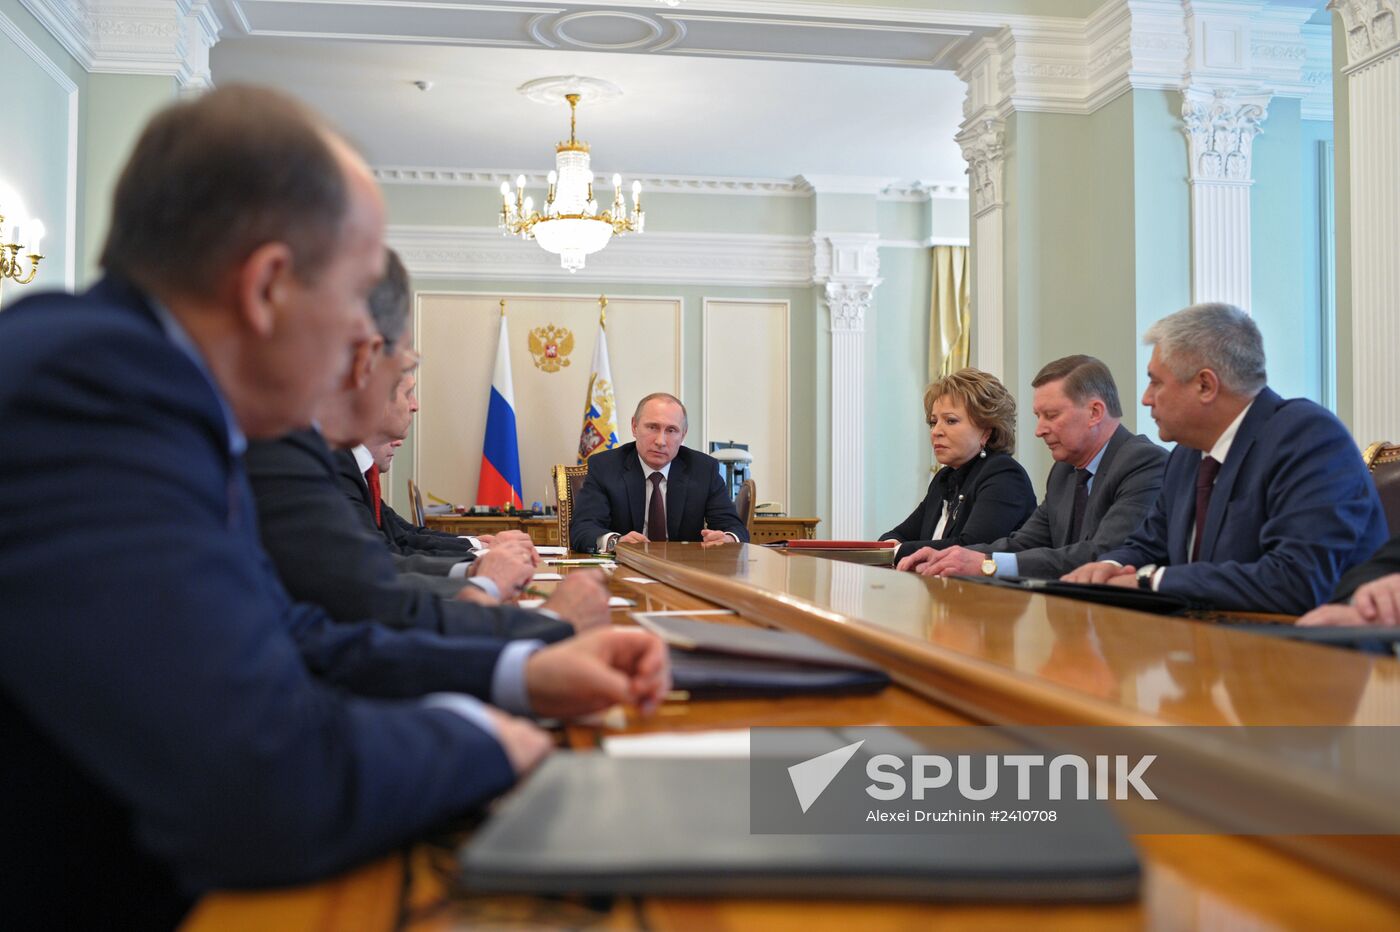 Vladimir Putin chairs Security Council meeting